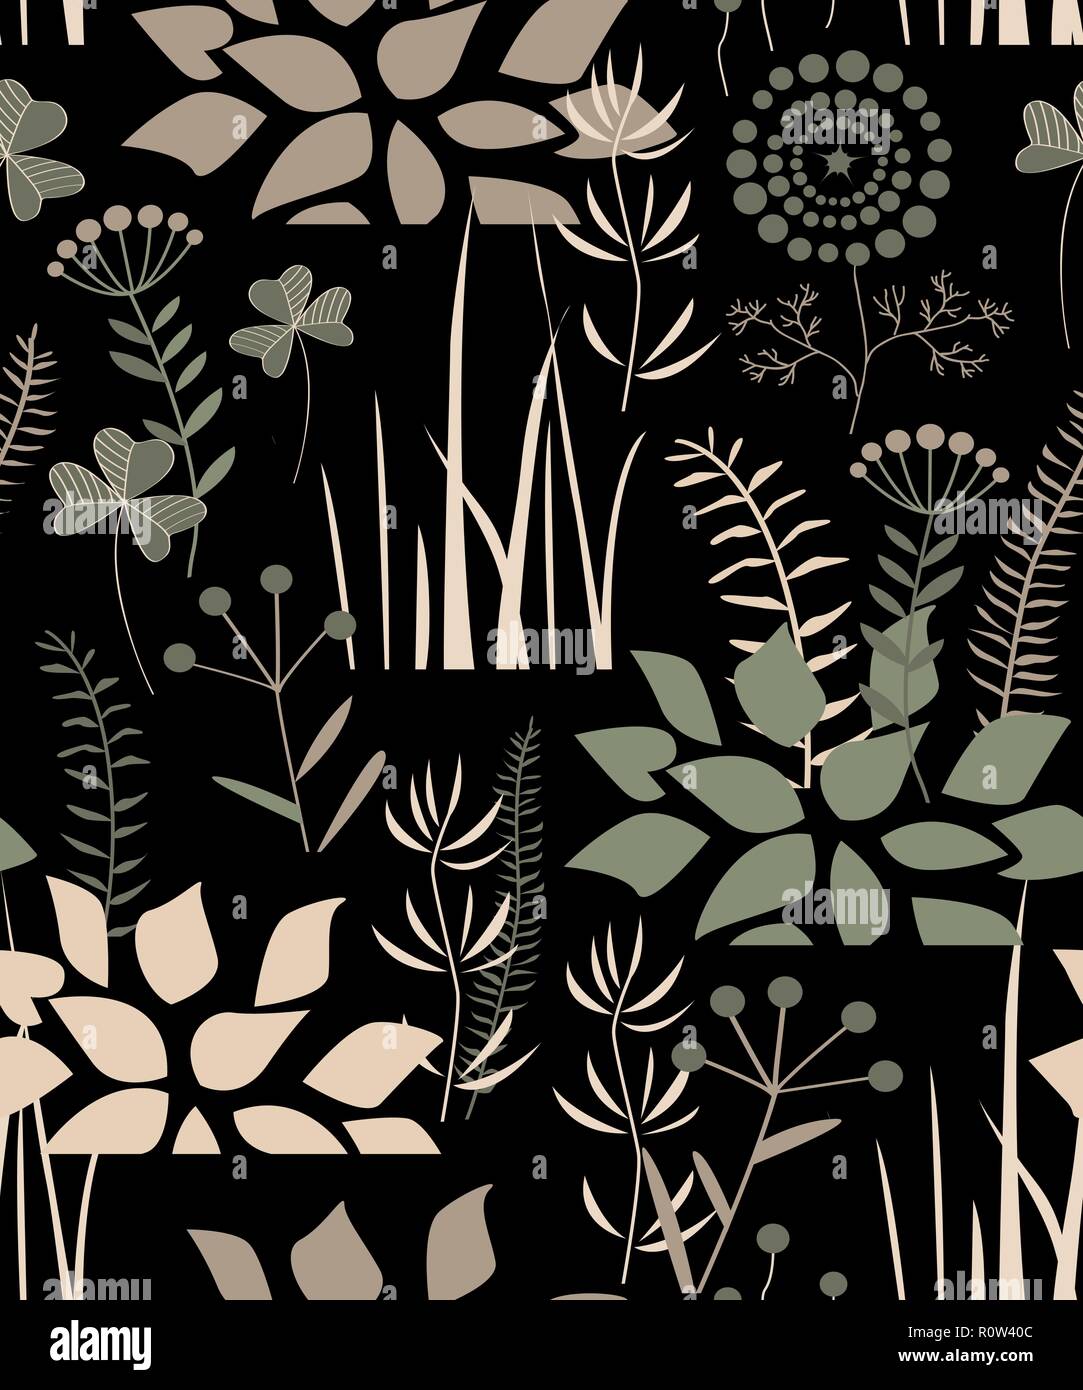 Transparente avec motif floral doodle plantes, fleurs, buissons, et de l'herbe. Vector illustration. Illustration de Vecteur